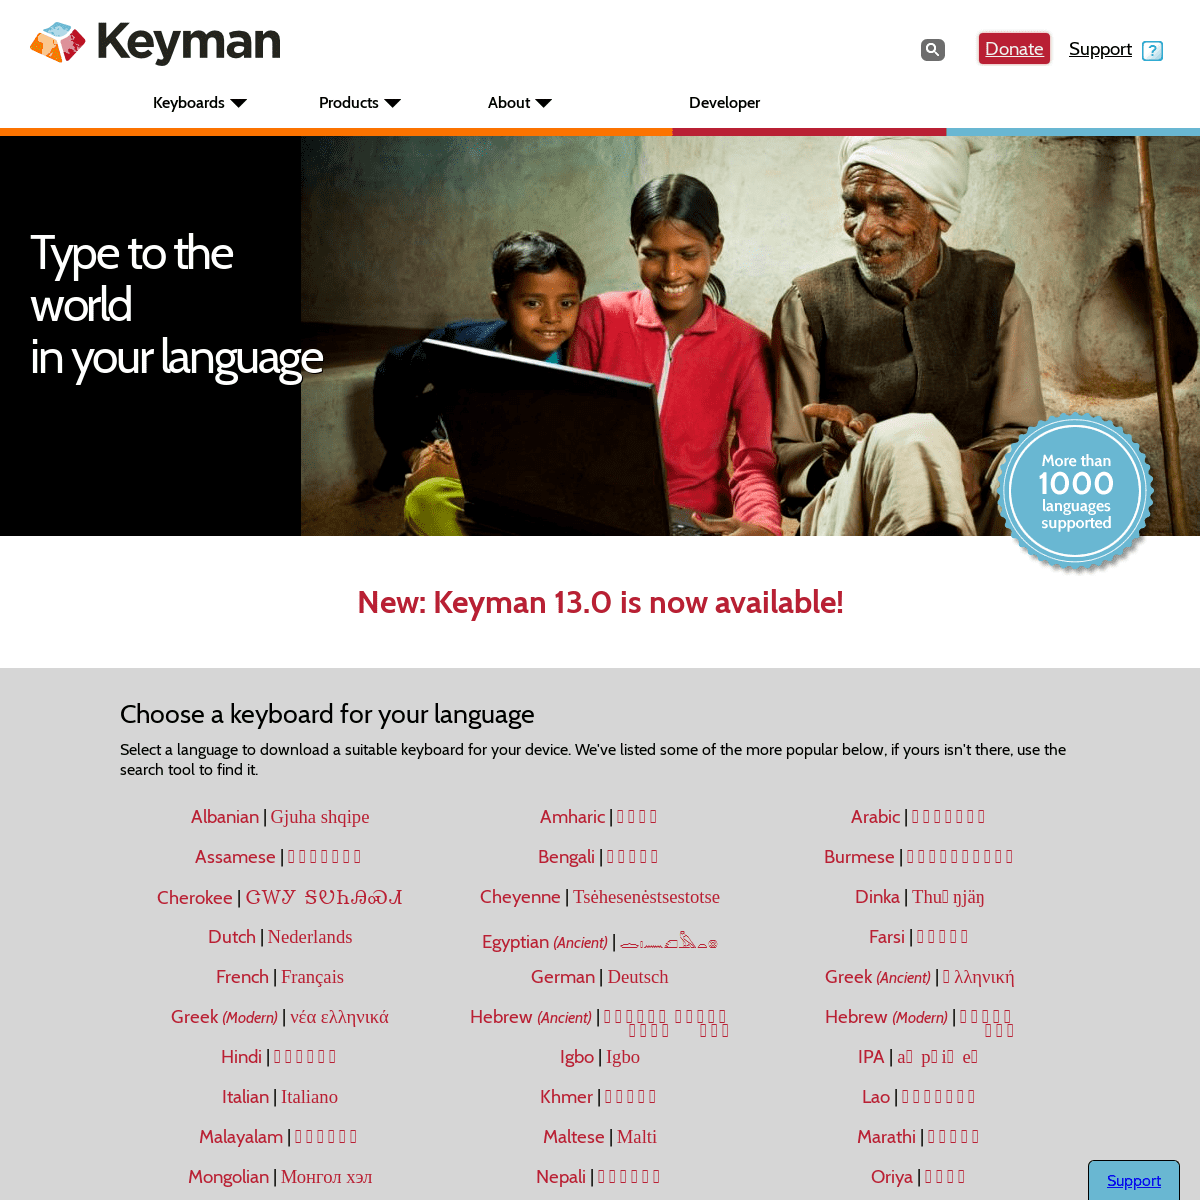 A complete backup of keyman.com